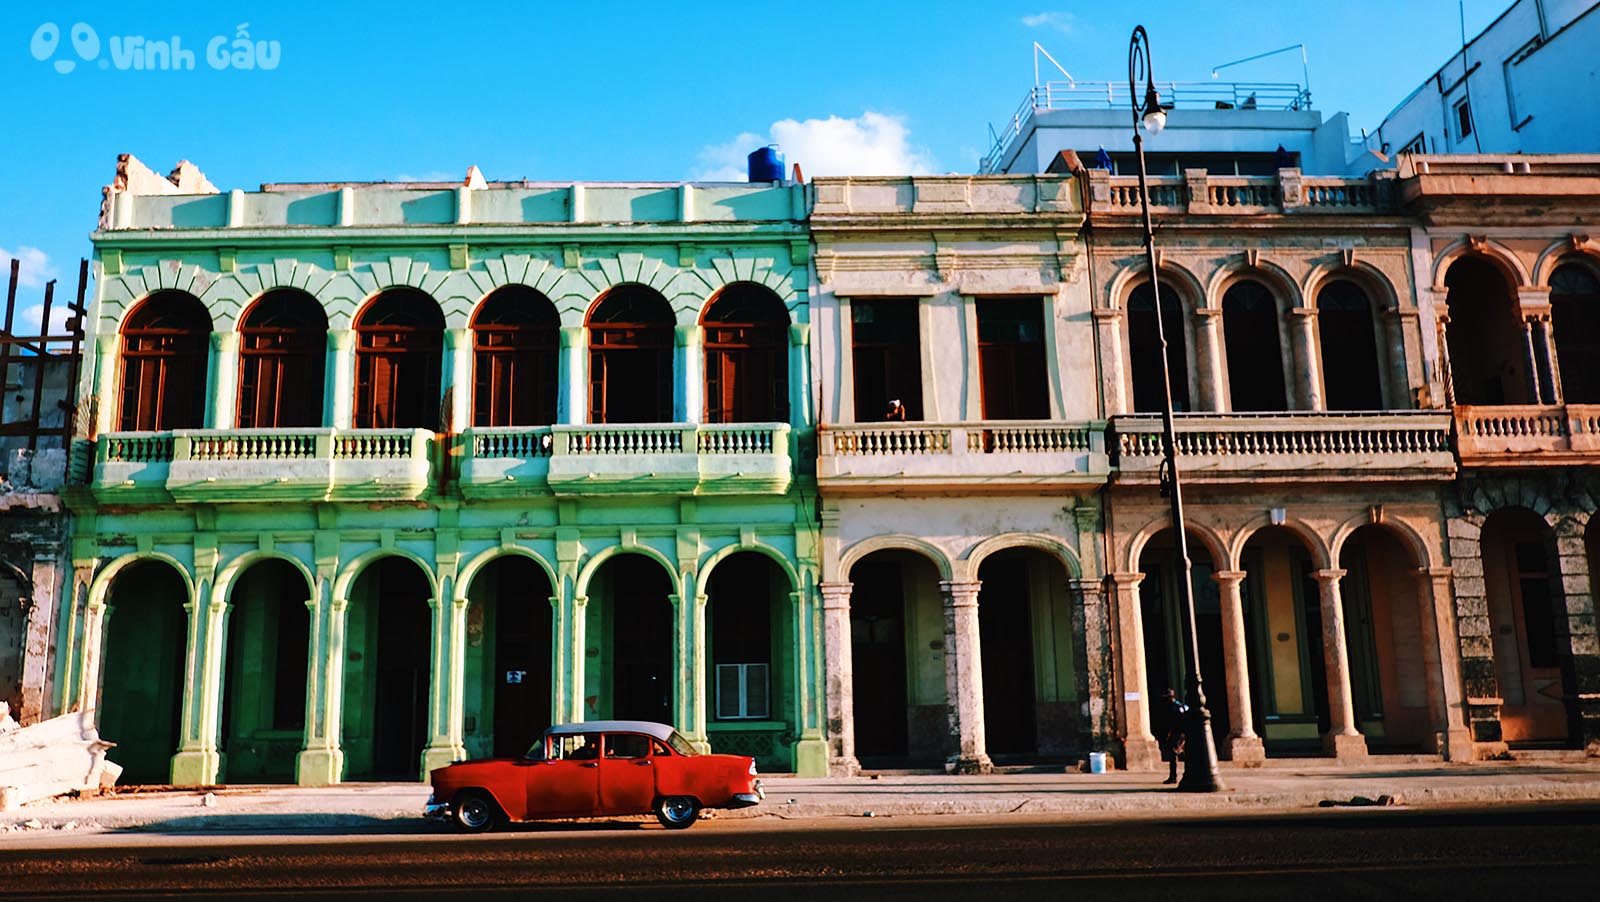 Du Lịch Cuba tự túc - Những đặc trưng của Cuba